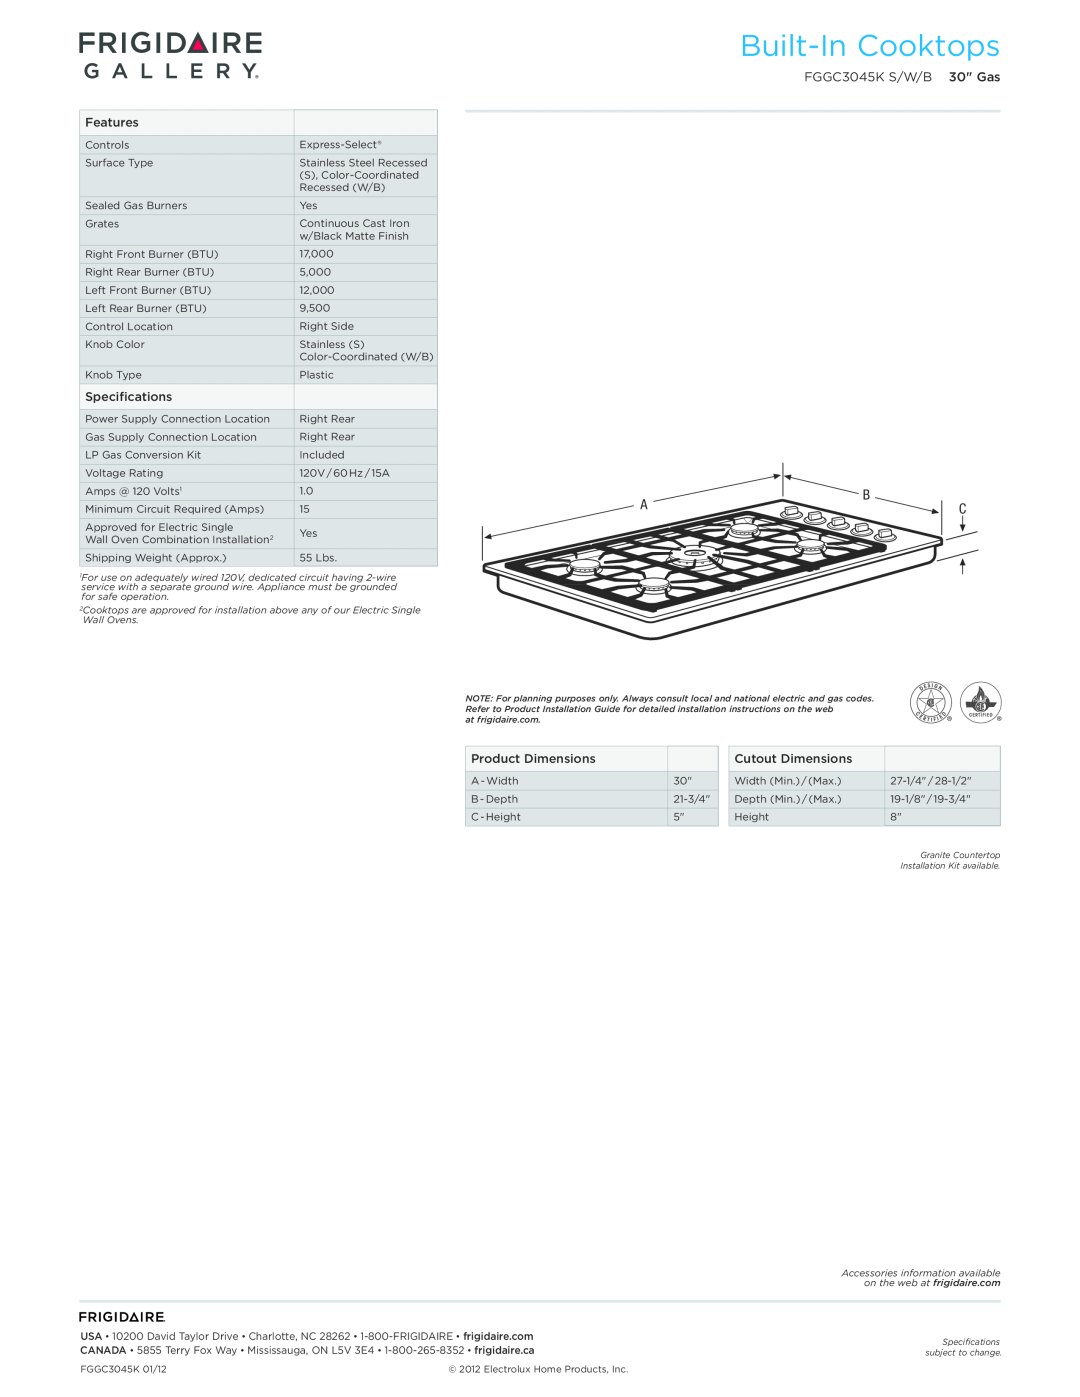 Frigidaire FGGC3045K S/W/B dimensions Built-InCooktops 